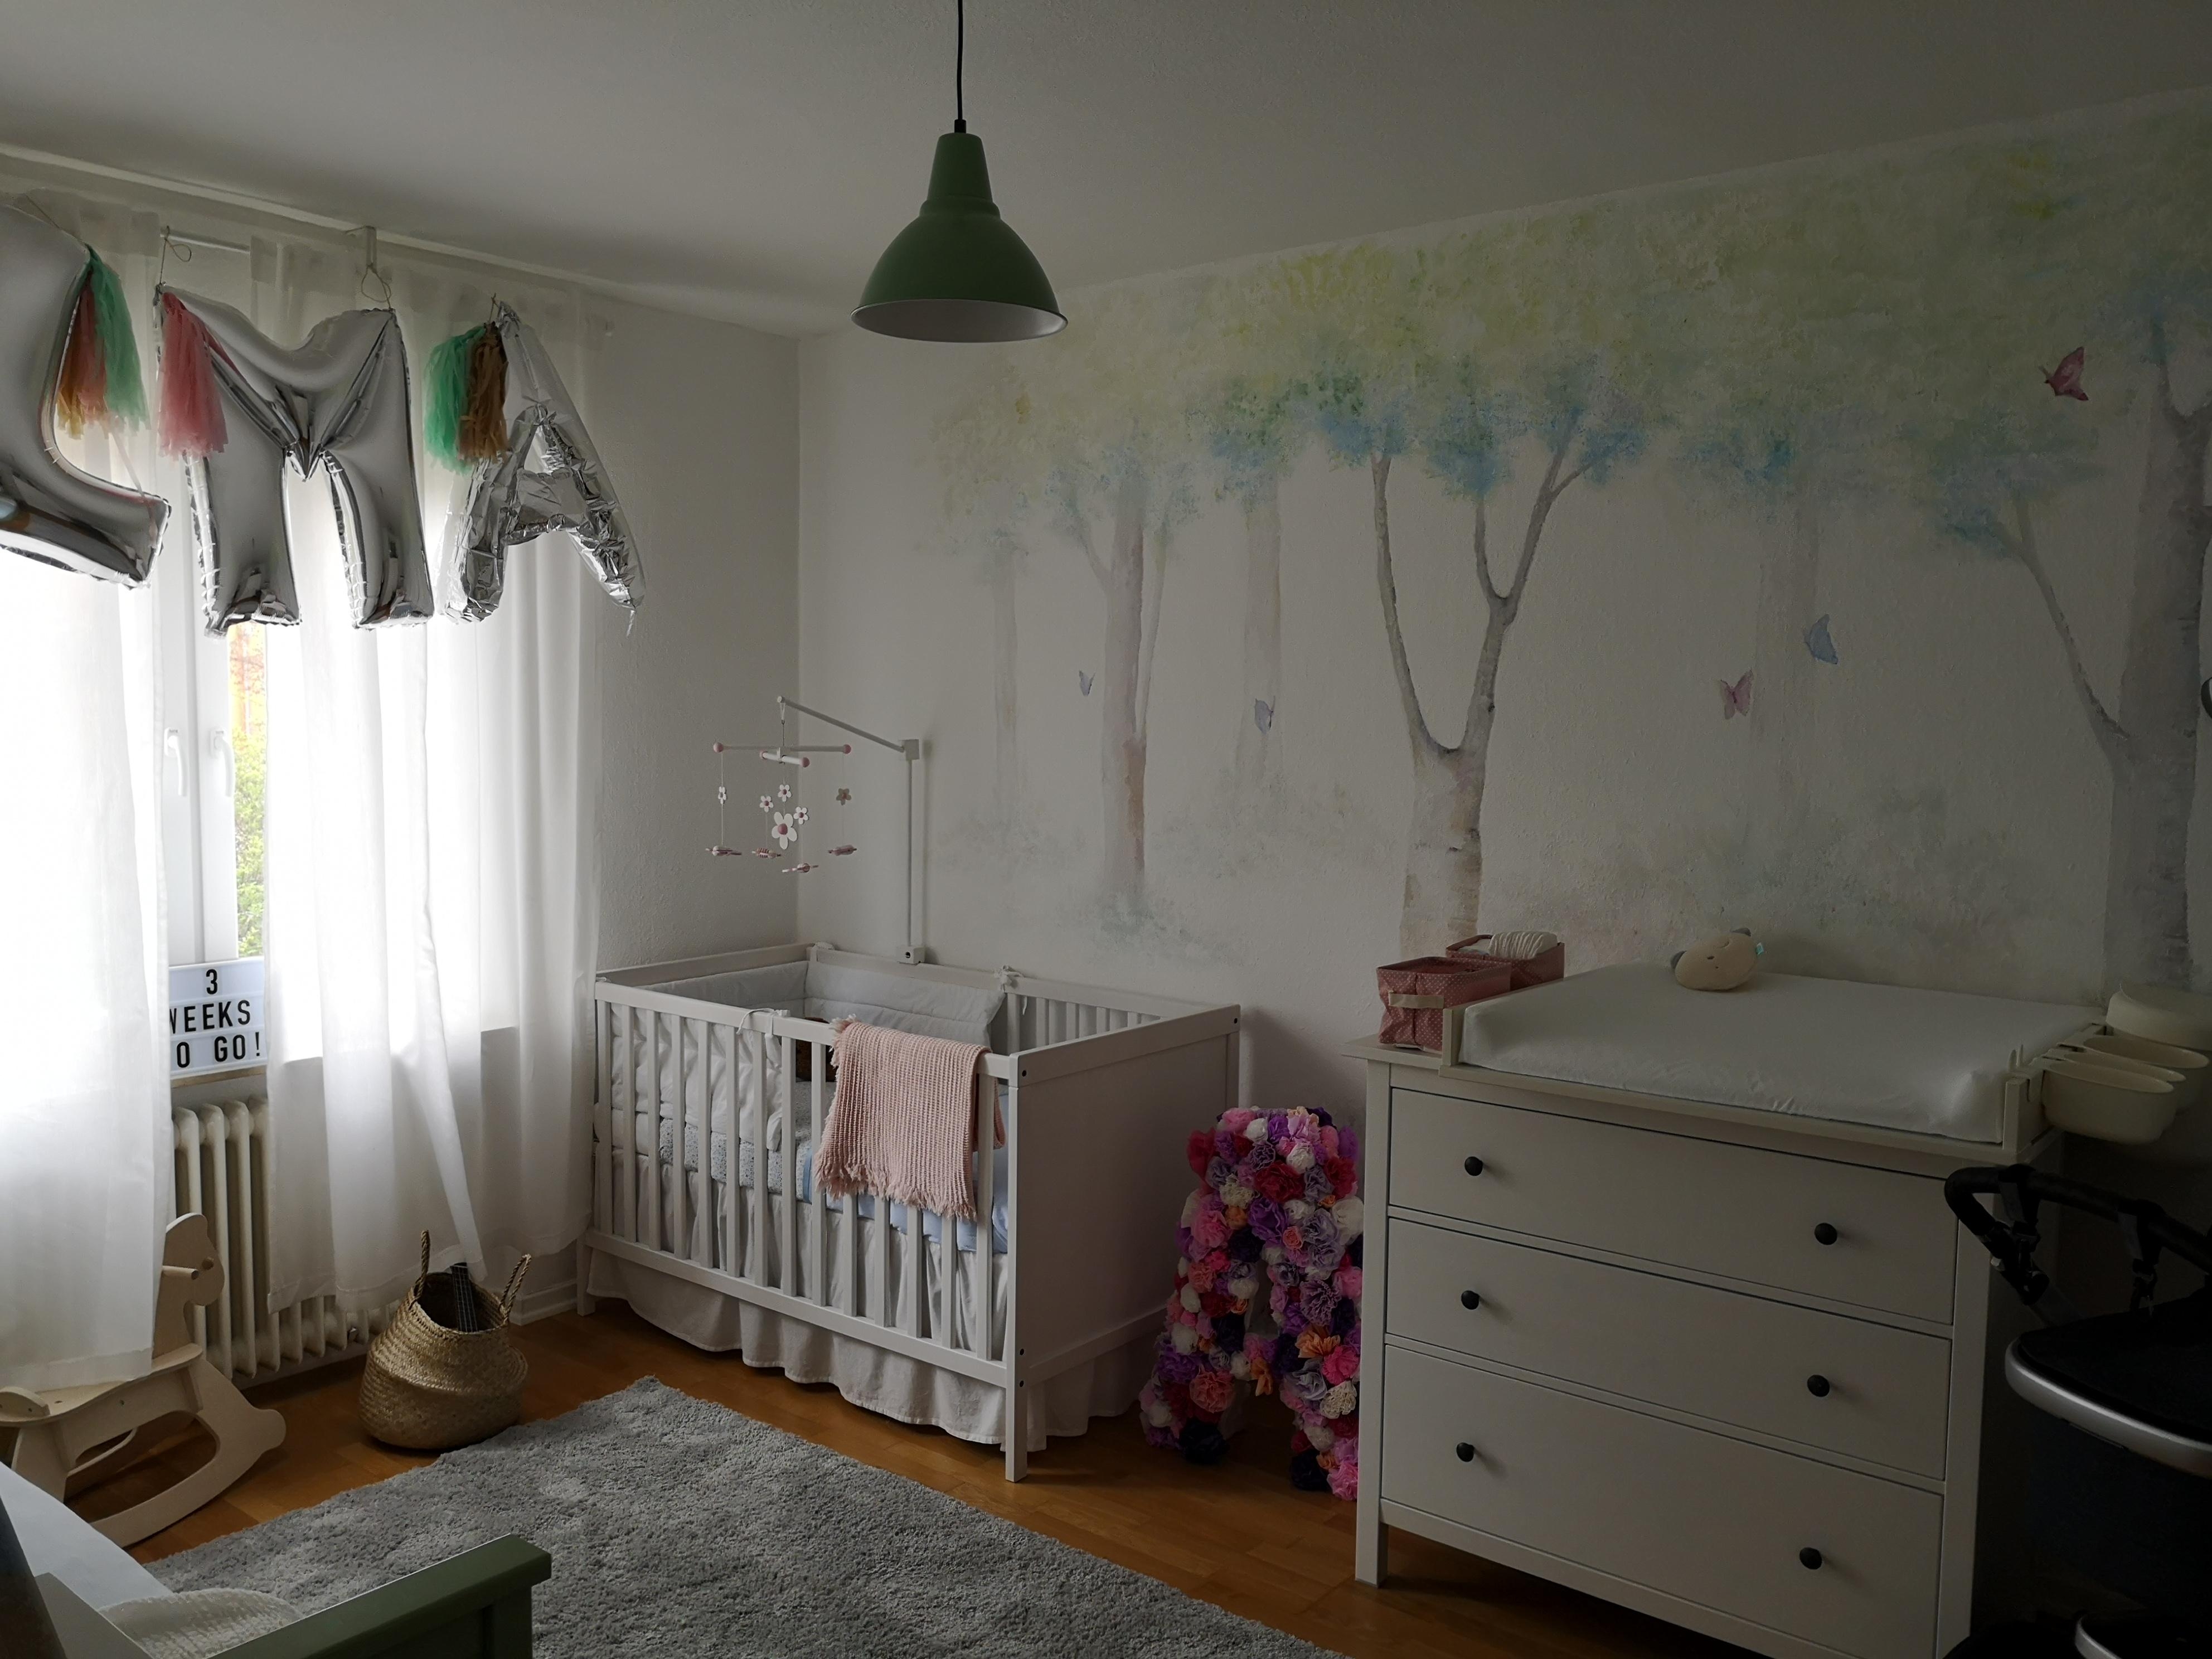 Unser Babyzimmerglück mit einem Wandgemälde von Oma #livingchallenge #babyzimmer #wandgemälde #wald